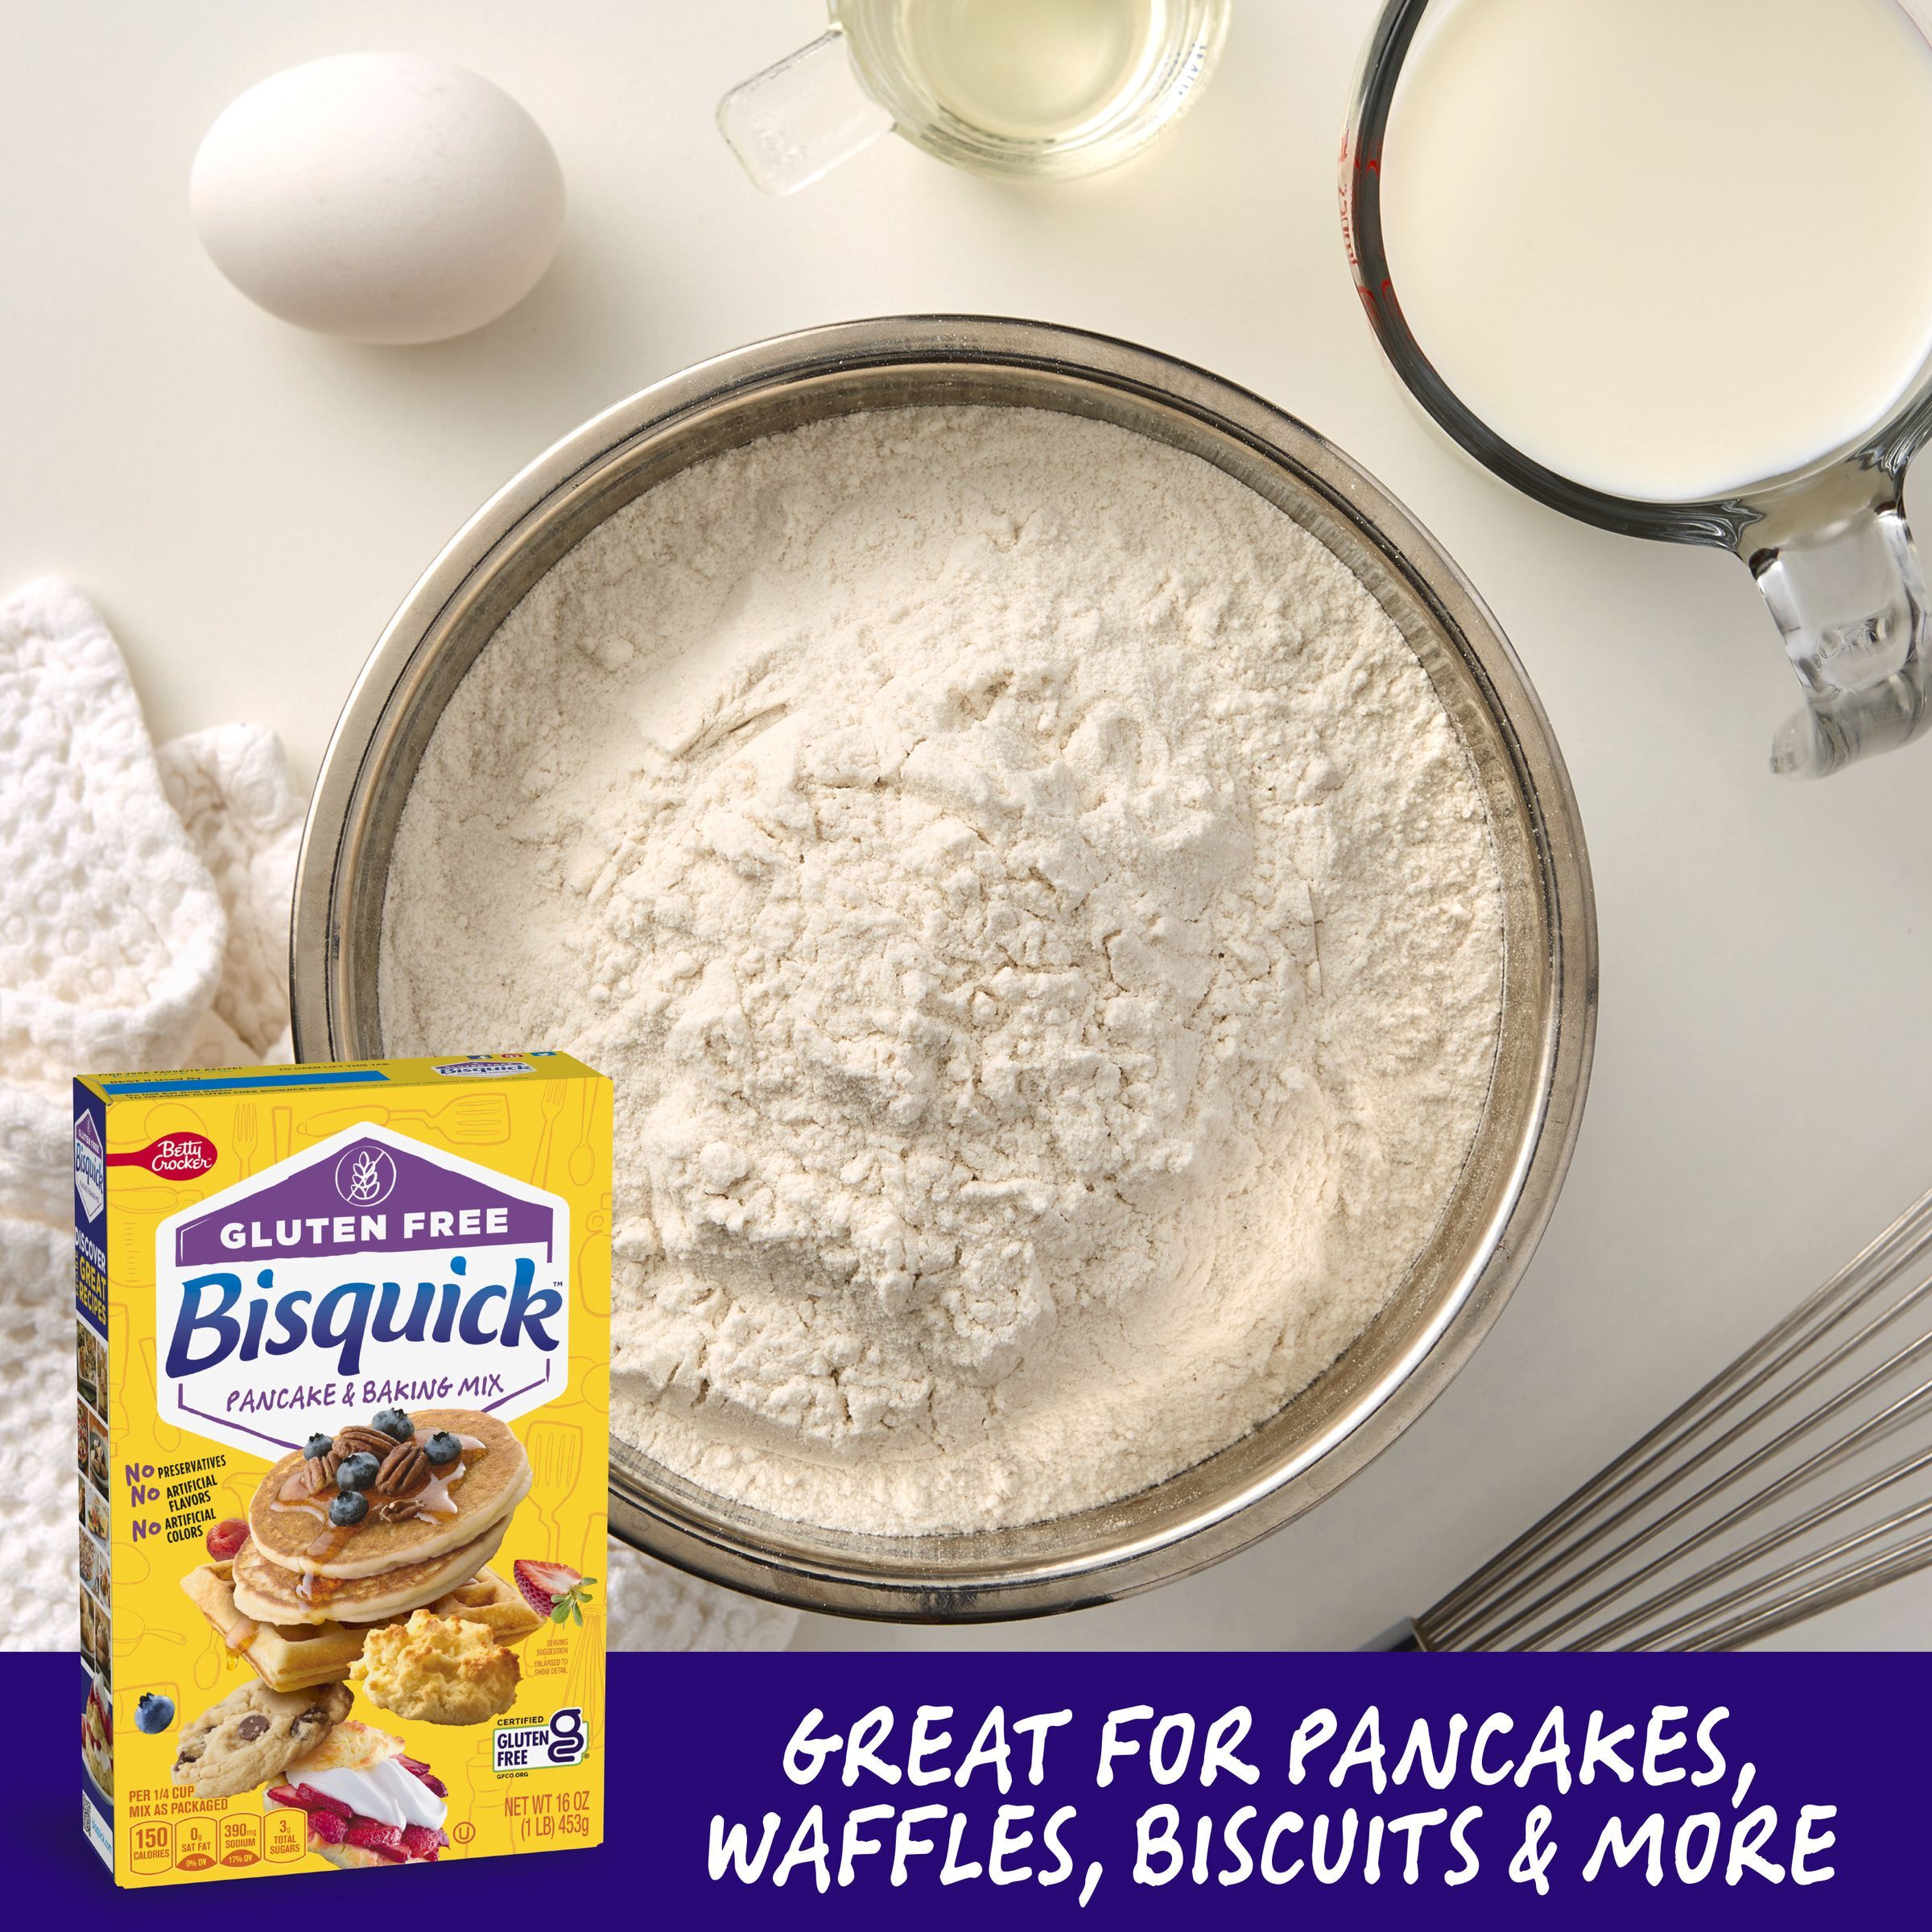 Betty Crocker Bisquick Pancake & Baking Mix, Gluten Free, 16 oz. - image 4 of 16